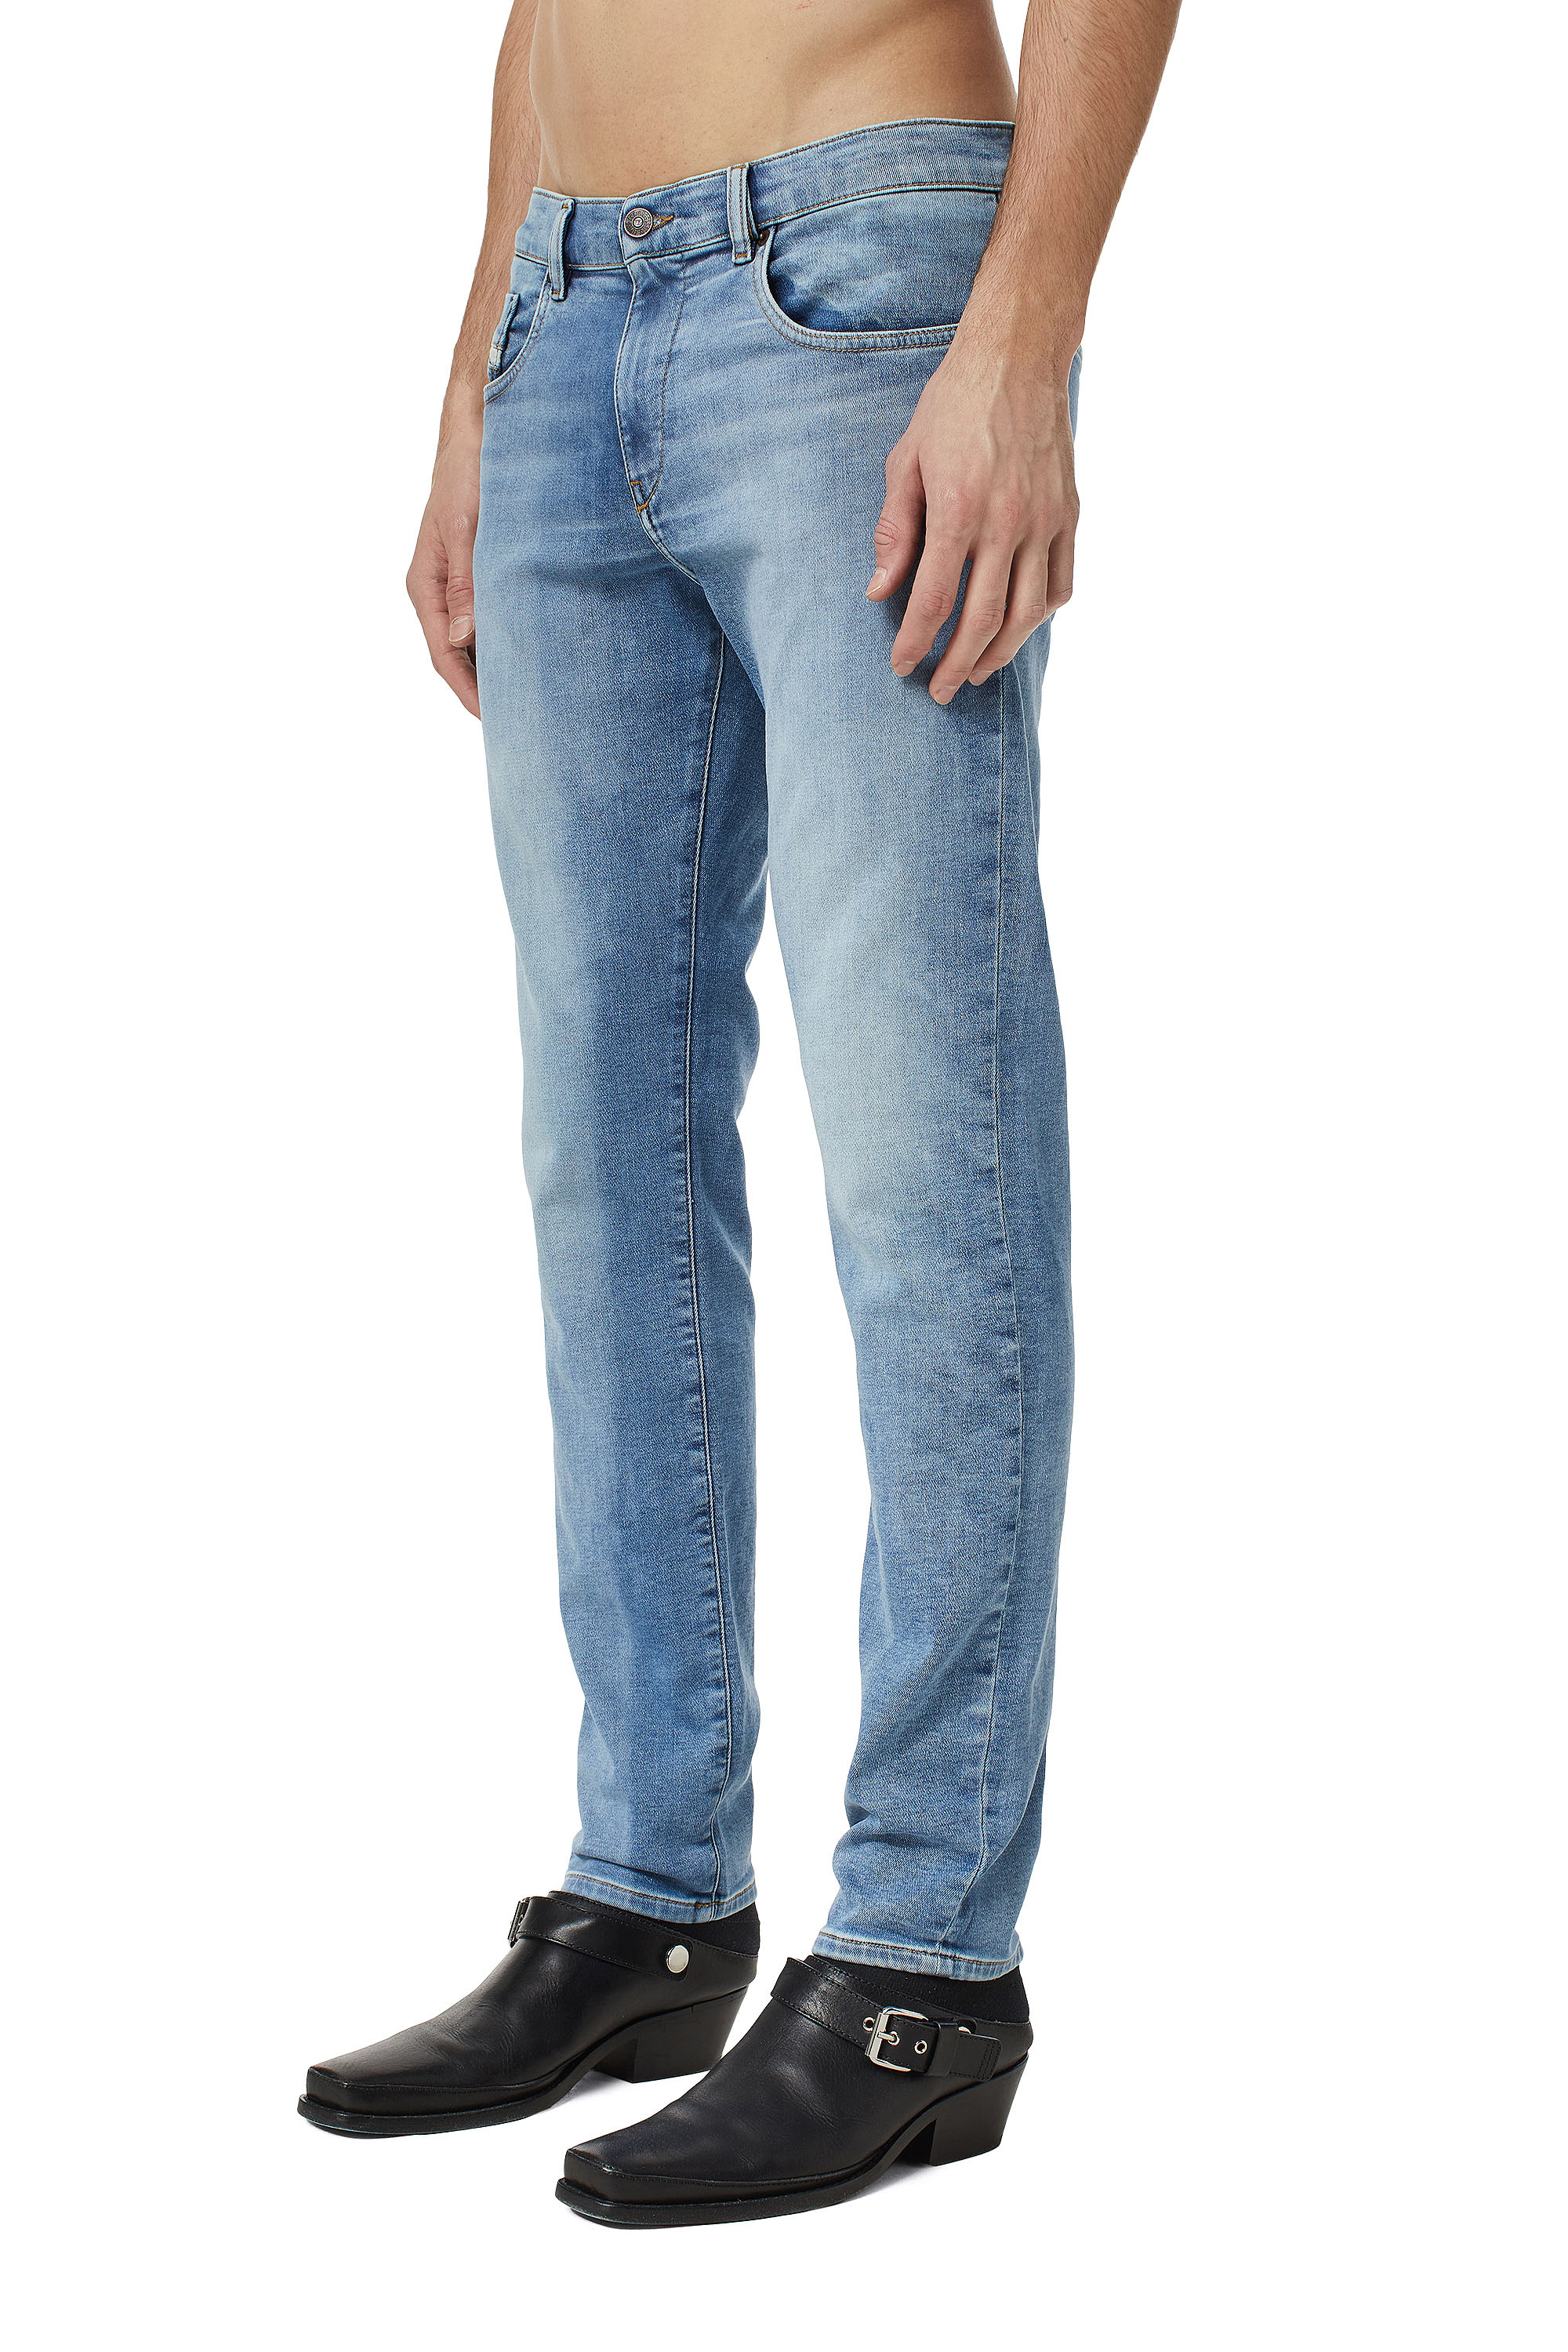 Men's Slim Jeans | Diesel® Official Online Store